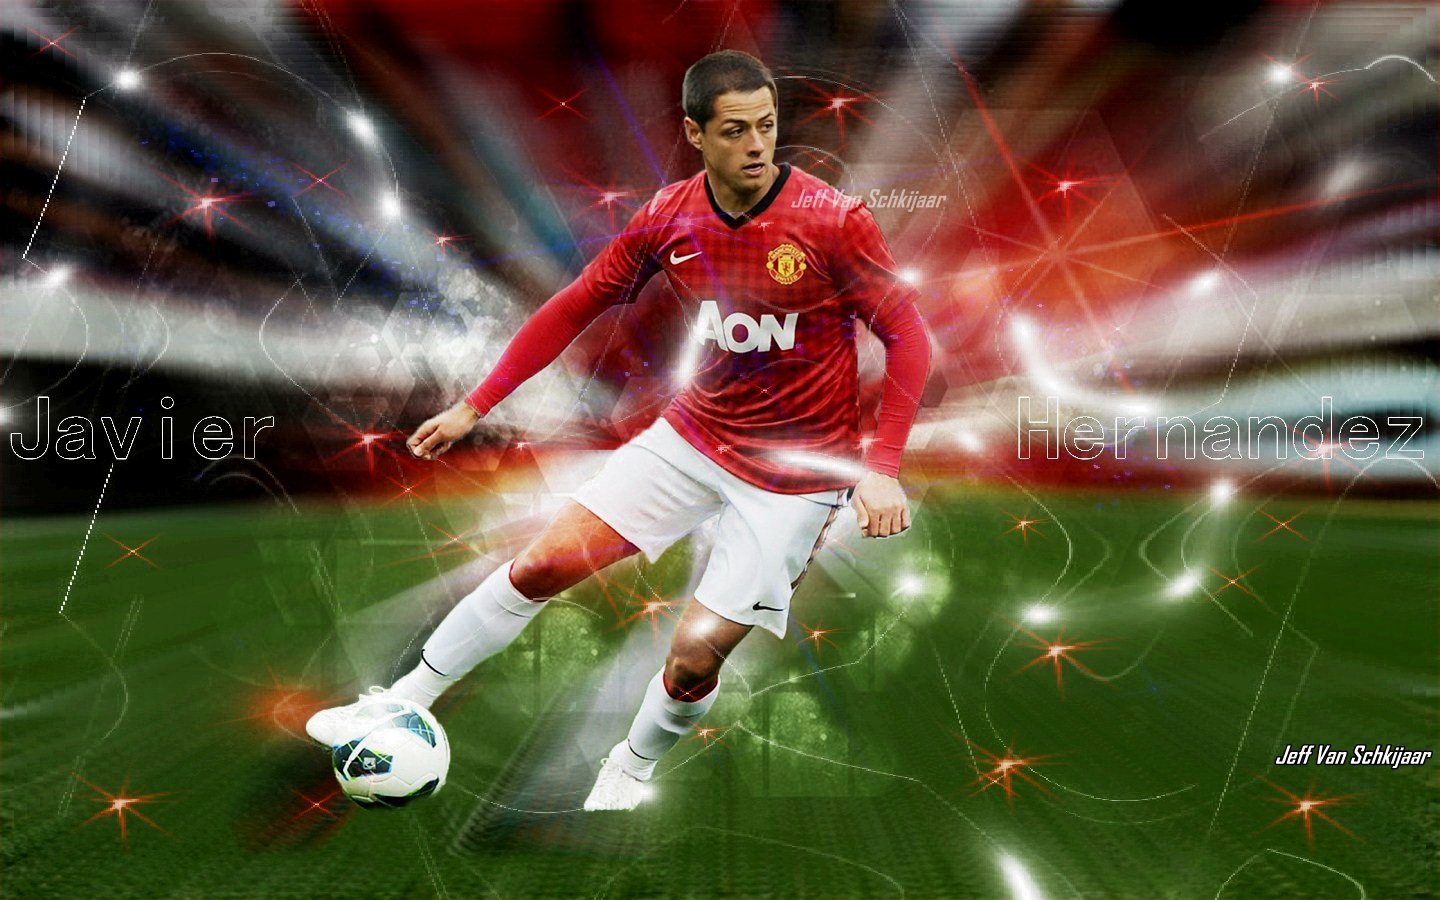 Hình nền Javier Hernandez (4) - hình nền bóng đá - hình nền cầu thủ - hình nền đội bóng